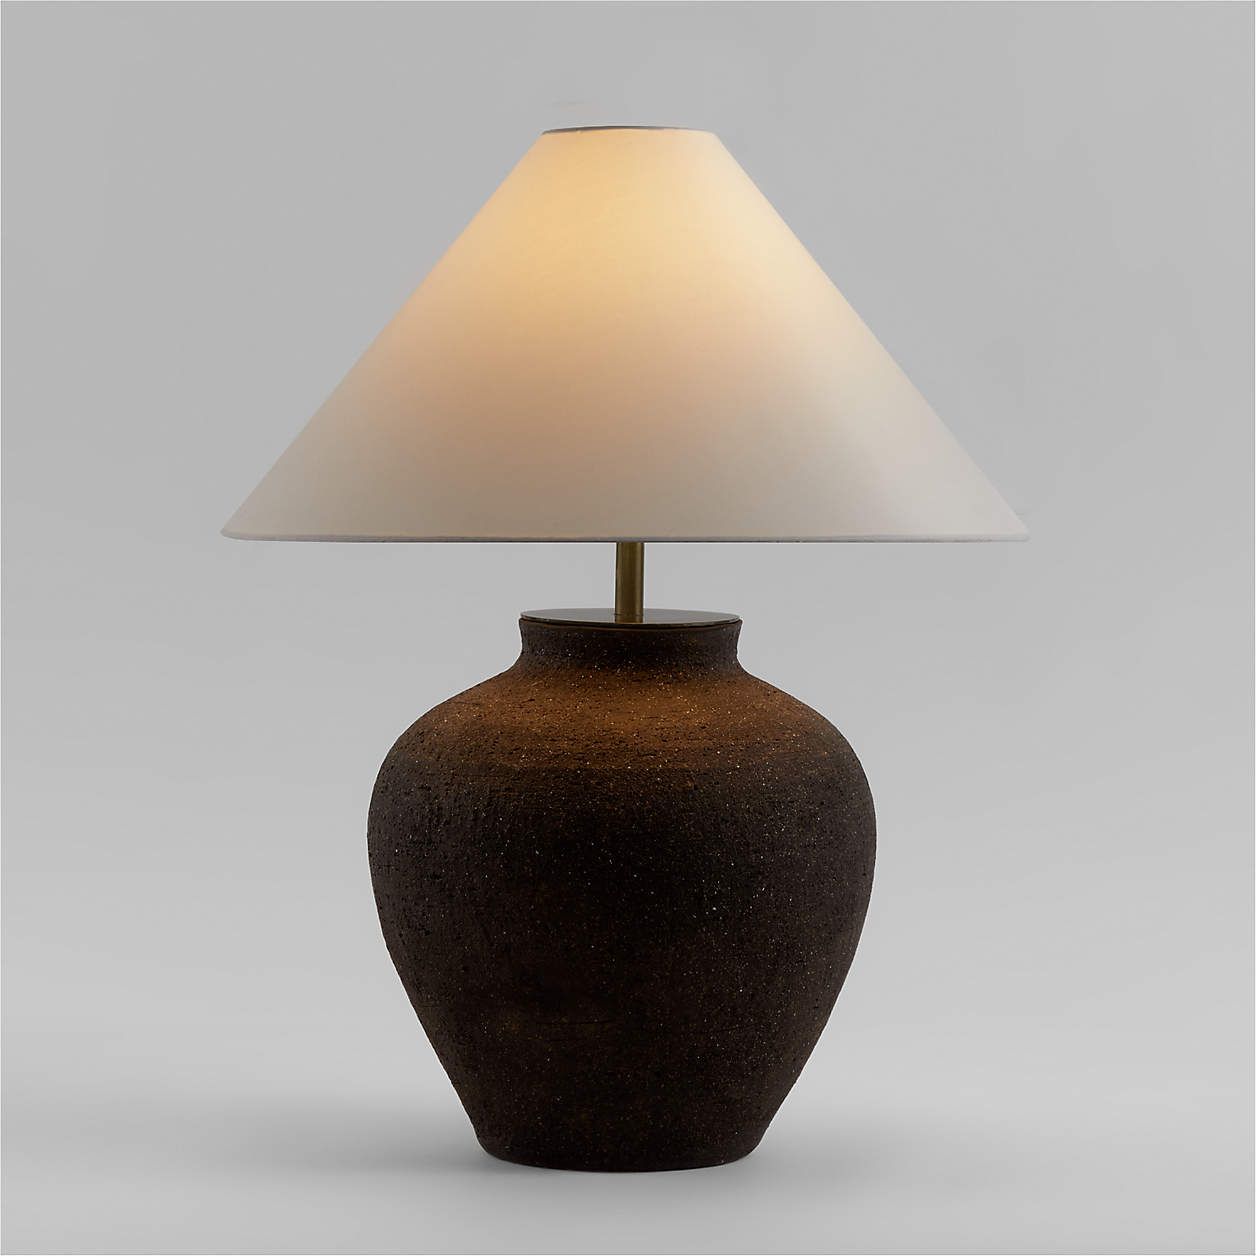 Corfu Black Table Lamp with Linen Drum Shade Bedroom Lighting | Crate & Barrel | Crate & Barrel